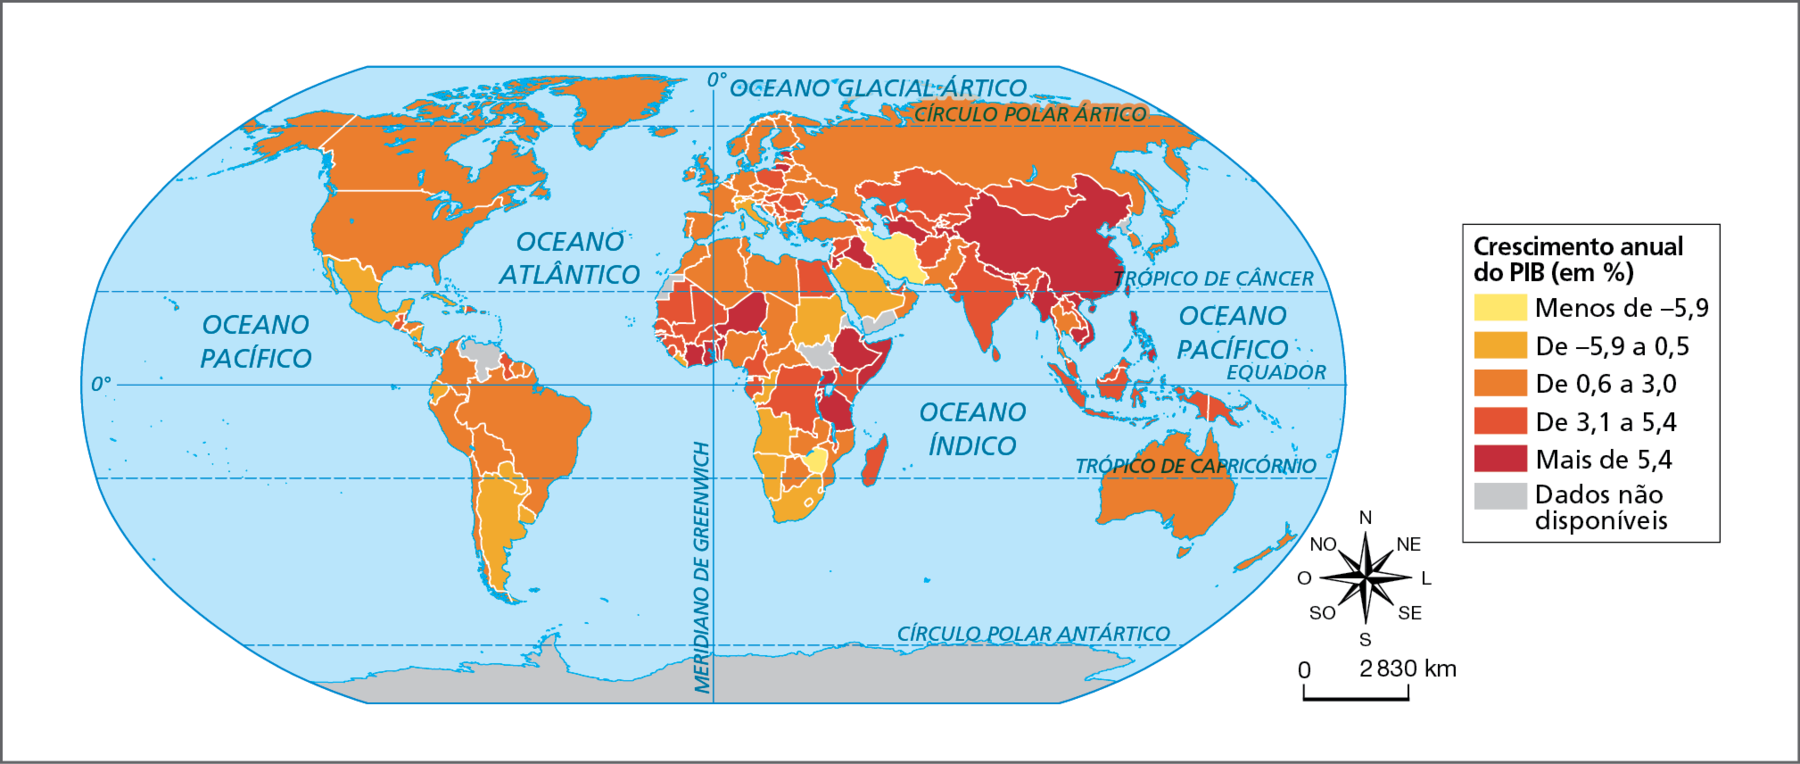 Mapa. Mundo: crescimento anual do PIB, 2019.  Planisfério com a divisão política e a representação da porcentagem de crescimento anual do PIB por país. As porcentagens são representadas por uma gradação do amarelo ao marrom. Menos de menos 5,9 por cento, em amarelo: Irã e Zimbábue. De menos 5,9 a 0,5 por cento, em laranja-claro: México, alguns países da América Central, países da América do Sul como Equador, Argentina, Paraguai e Uruguai, países da África como Sudão, Congo, Angola, Namíbia e África do Sul, países da Europa como Itália e, na Ásia, a Arábia Saudita.  De 0,6 a 3,0 por cento, em laranja escuro: Canadá e Estados Unidos na América do Norte; Chile, Peru, Colômbia, Suriname, Guiana francesa, Brasil e Bolívia na América do Sul; países da África como Marrocos, Argélia, Tunísia, Líbia, Chade, Zâmbia e Botsuana; a maior parte dos países da Europa, como França, Espanha, Portugal, Reino Unido, Alemanha, Noruega, Suécia e Finlândia; países da Ásia como Rússia, Japão, Coreia do Sul, Turquia, Paquistão e Tailândia e, na Oceania, Austrália e Nova Zelândia. De 3,1 a 5,4 por cento, em laranja-escuro: na América Central, Guatemala e República Dominicana; Guiana na América do Sul; na África, países na porção oeste, como Mauritânia, Mali, Senegal e Guiné e também países como Egito, Quênia e Madagascar; na Europa, países do leste, como Polônia, Romênia,  Hungria e Bulgária; na Ásia, países como Cazaquistão, Mongólia, Afeganistão, Índia, Malásia e Indonésia e, na Oceania, Papua Nova Guiné. Mais de 5,4 por cento, em marrom: na África, Níger, Costa do Marfim, Gana, Benim, Etiópia, Somália, Uganda e Tanzânia; na Europa, Estônia e Lituânia e, na Ásia, Jordânia, Iraque, Turcomenistão, Tadjiquistão, China, Mianmar, Camboja, Vietnã e Filipinas.   Dados não disponíveis: Venezuela, Saara Ocidental, Sudão do Sul, Iêmen, Coreia do Norte e Antártida. À direita, rosa dos ventos e escala de 0 a 2.830 quilômetros.